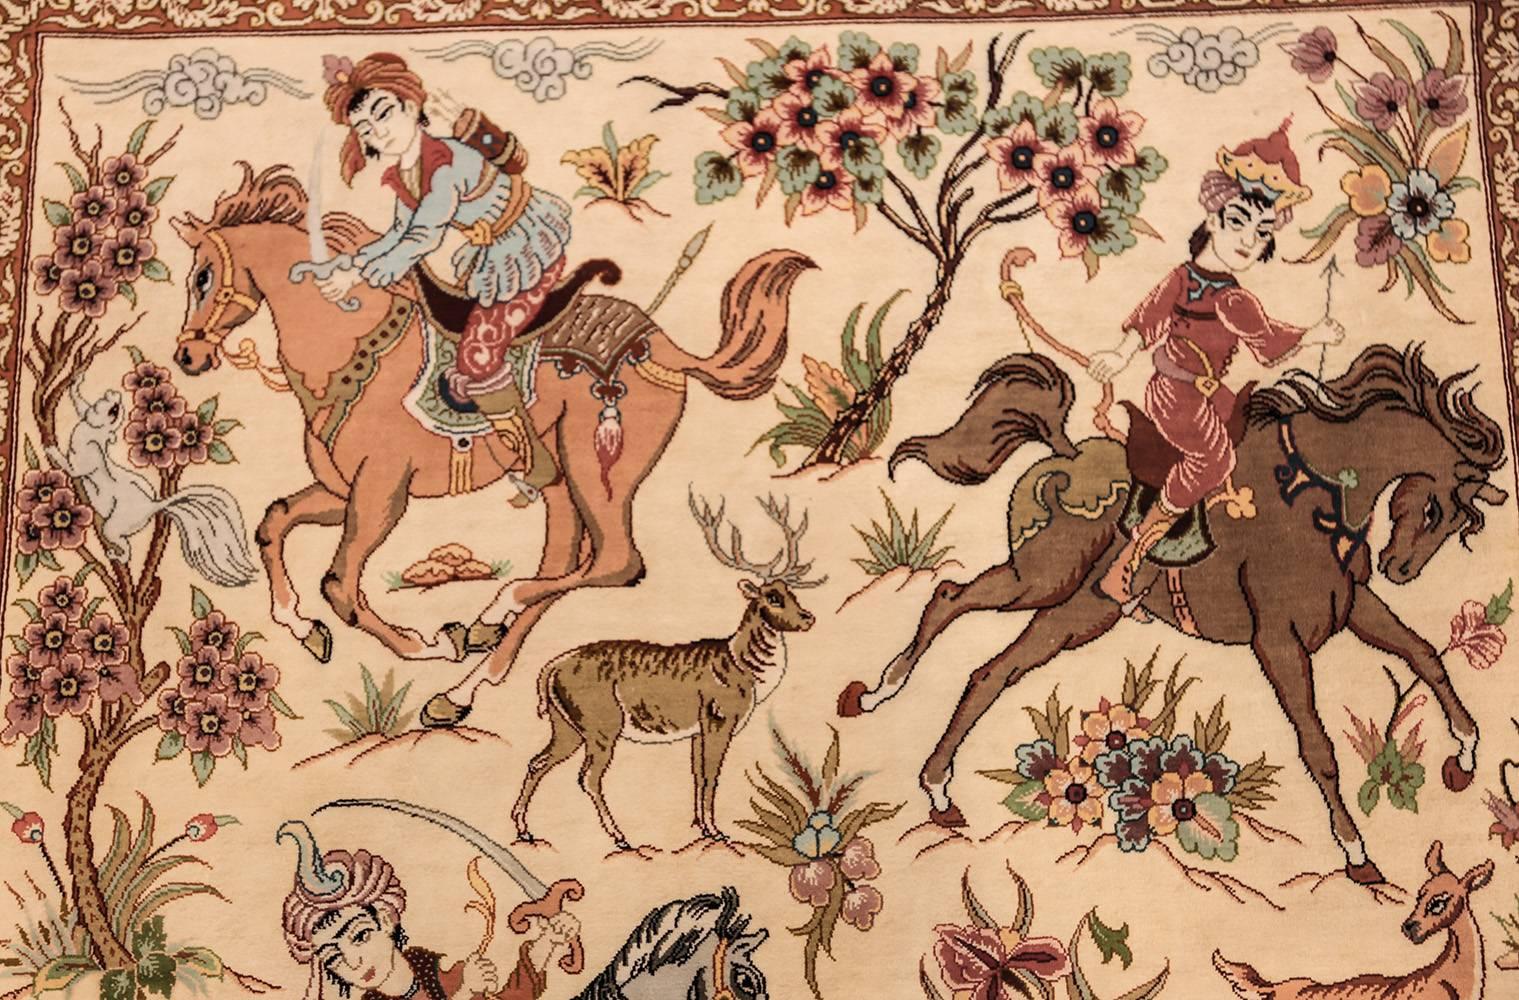 persian rug hunting scene